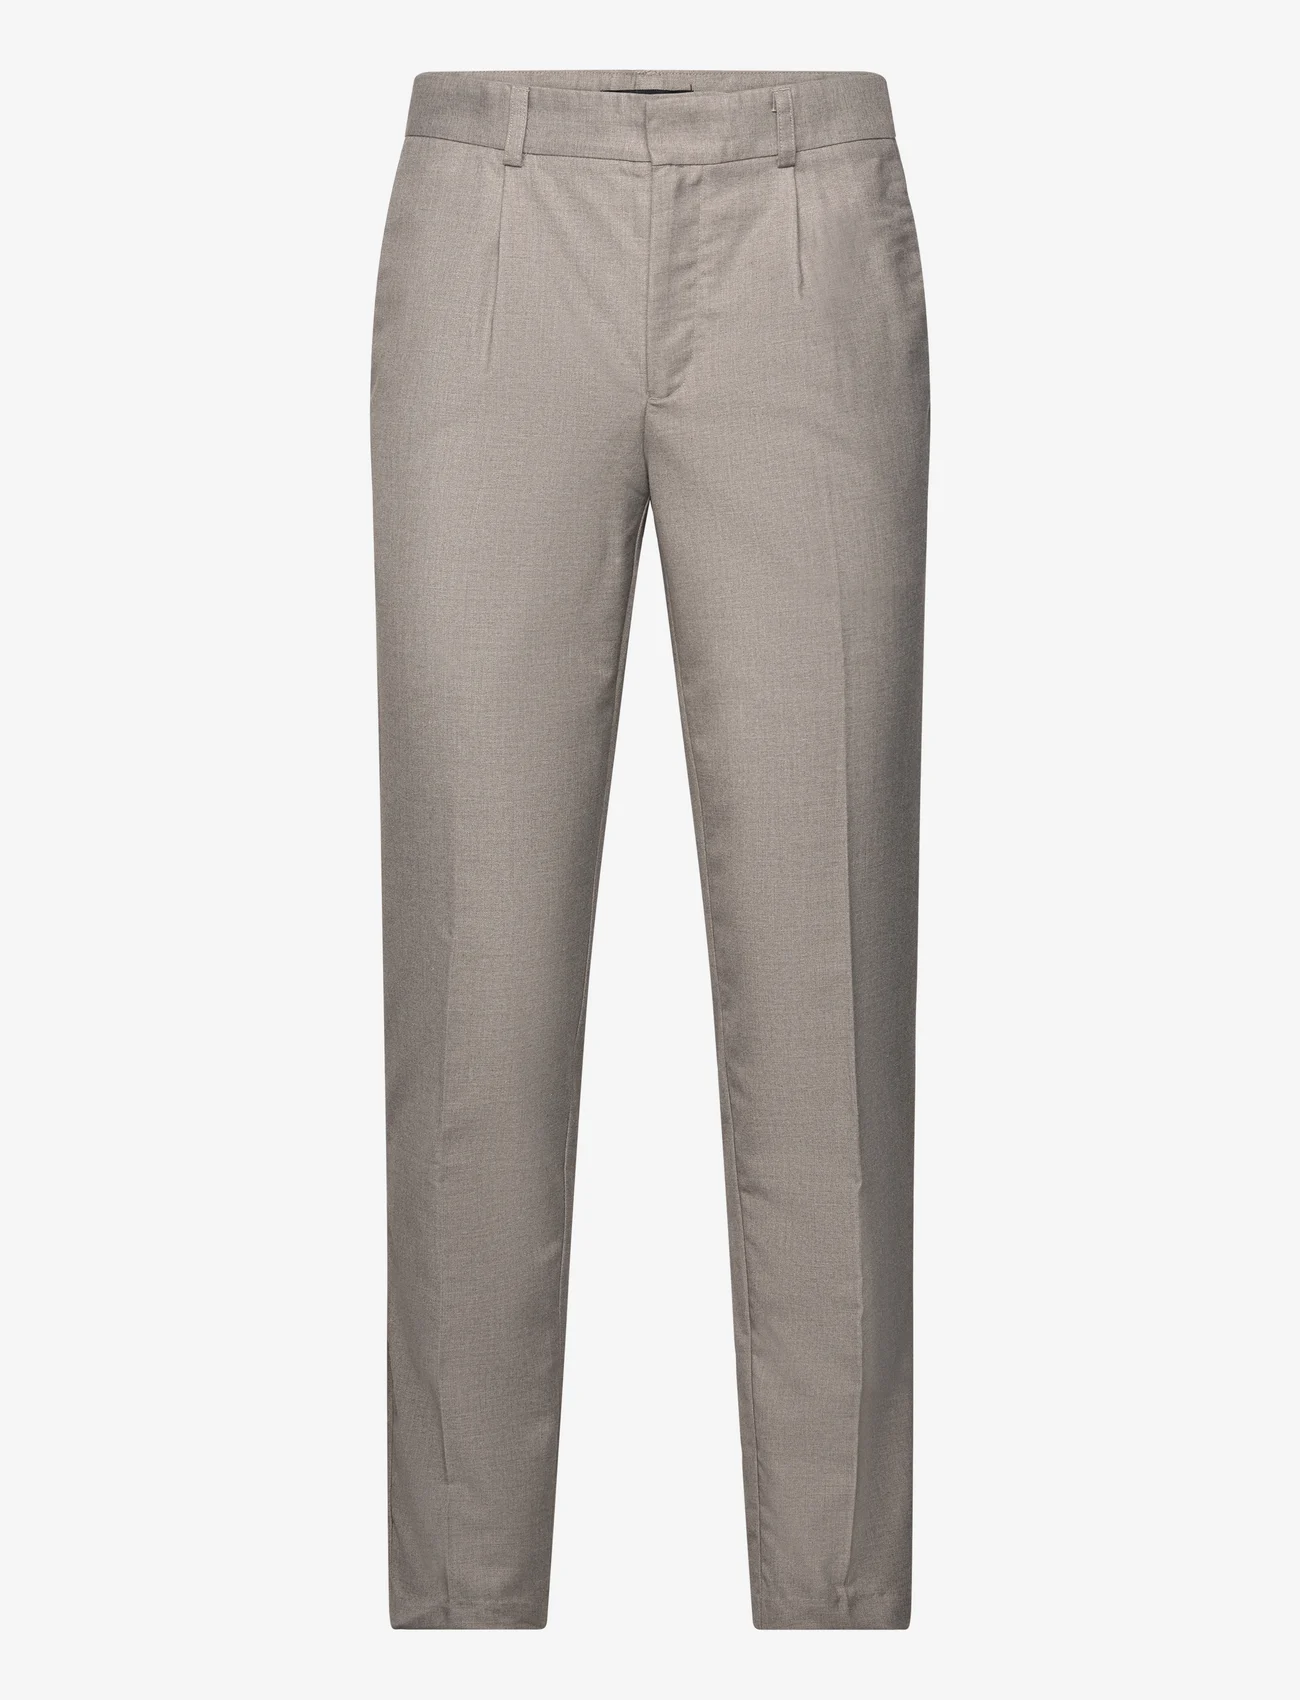 Bruuns Bazaar - MicksBBDagger pants - suit trousers - sand - 0